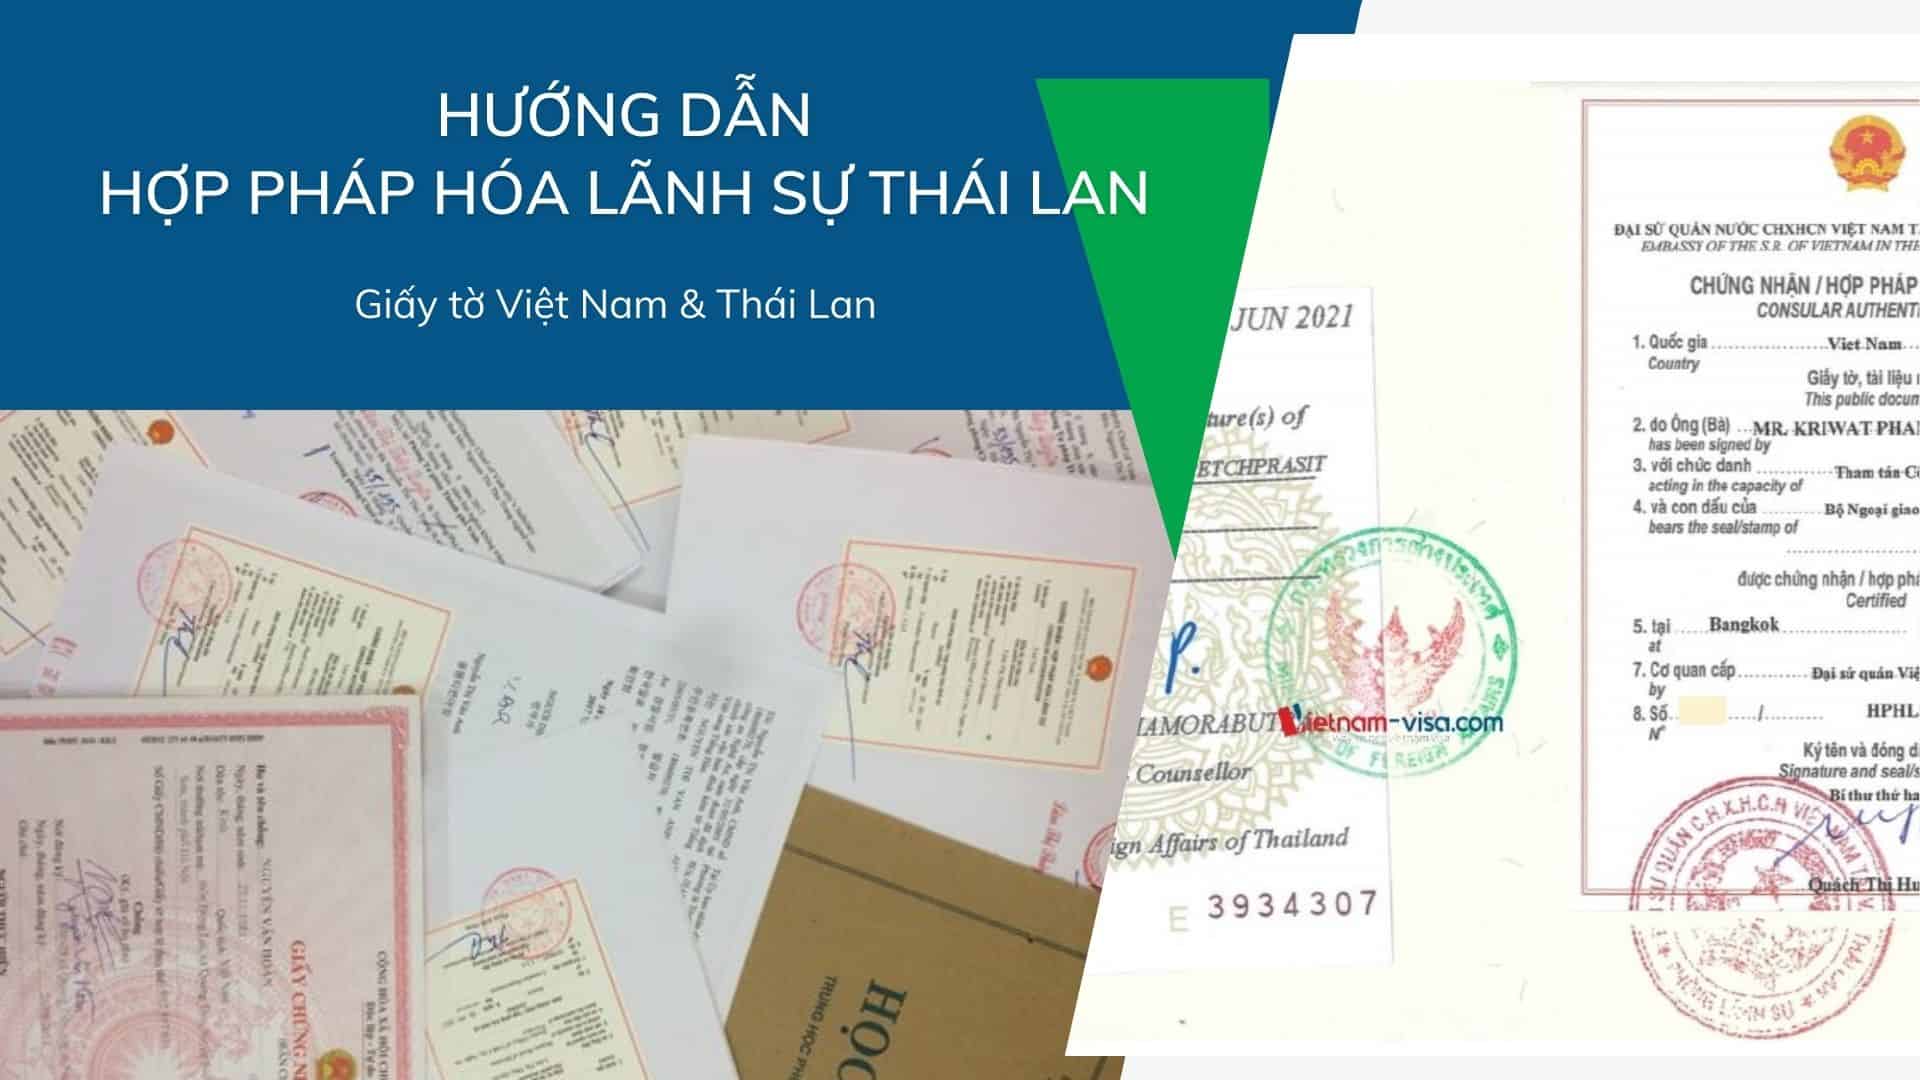 Hướng dẫn Hợp pháp hóa lãnh sự Thái Lan